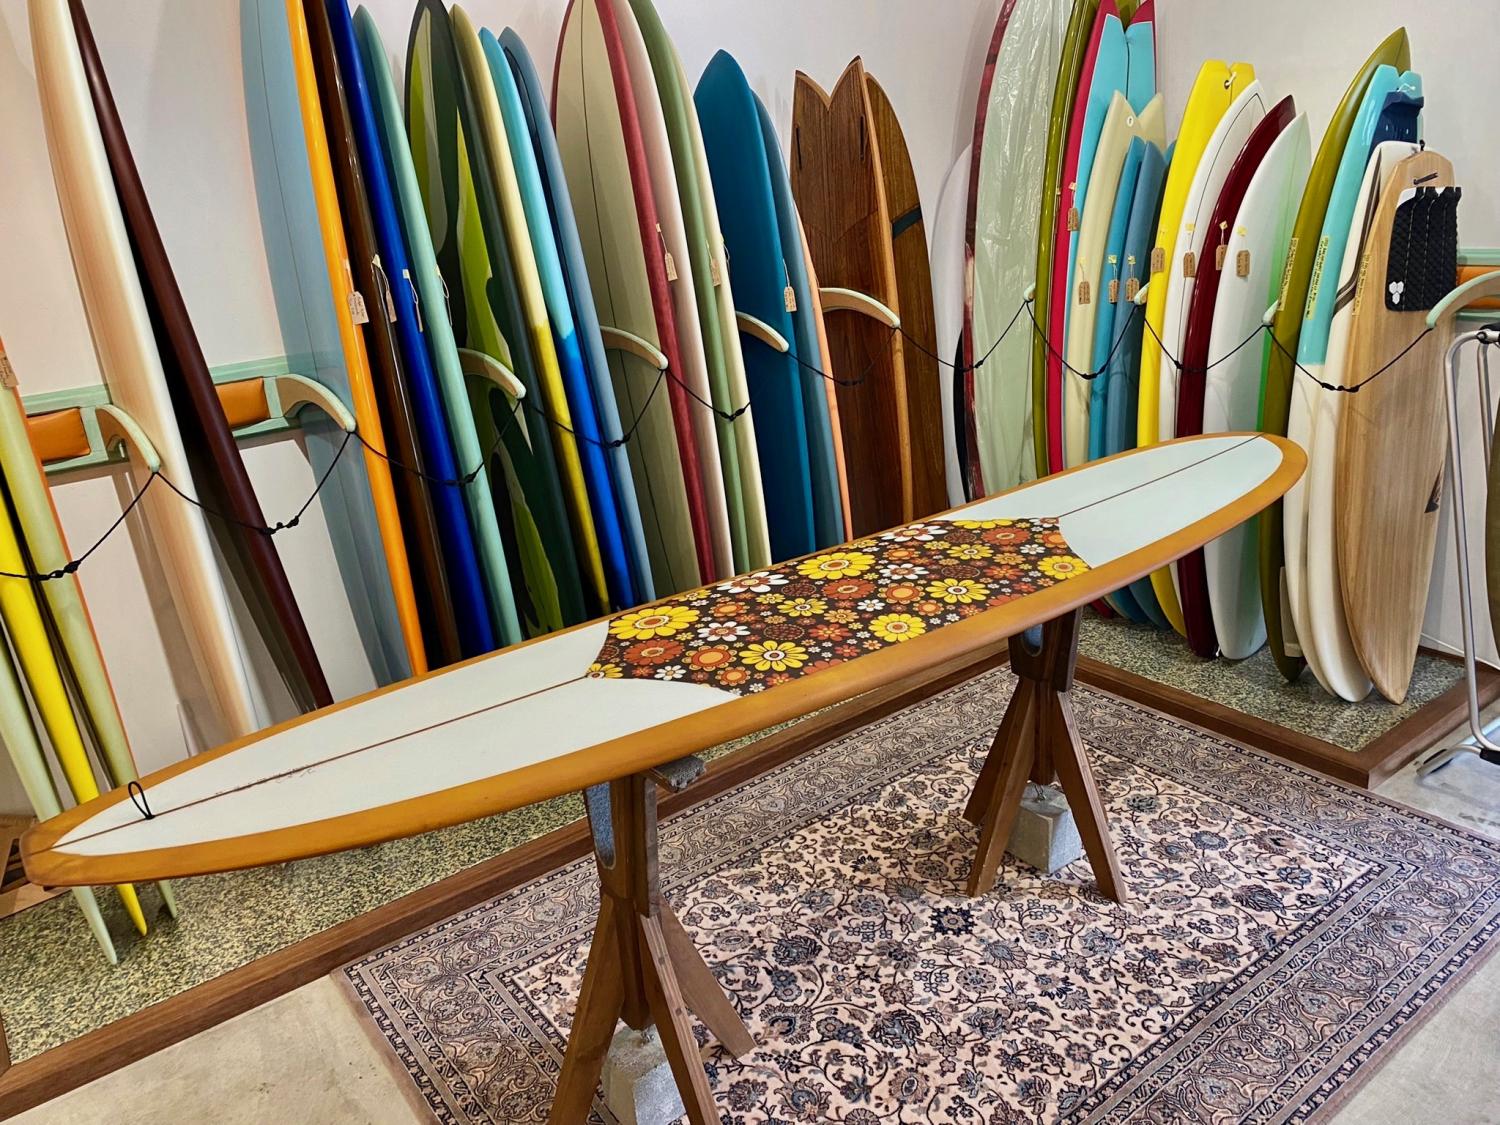 One Love model 9.4 WOODIN SURFBOARDS